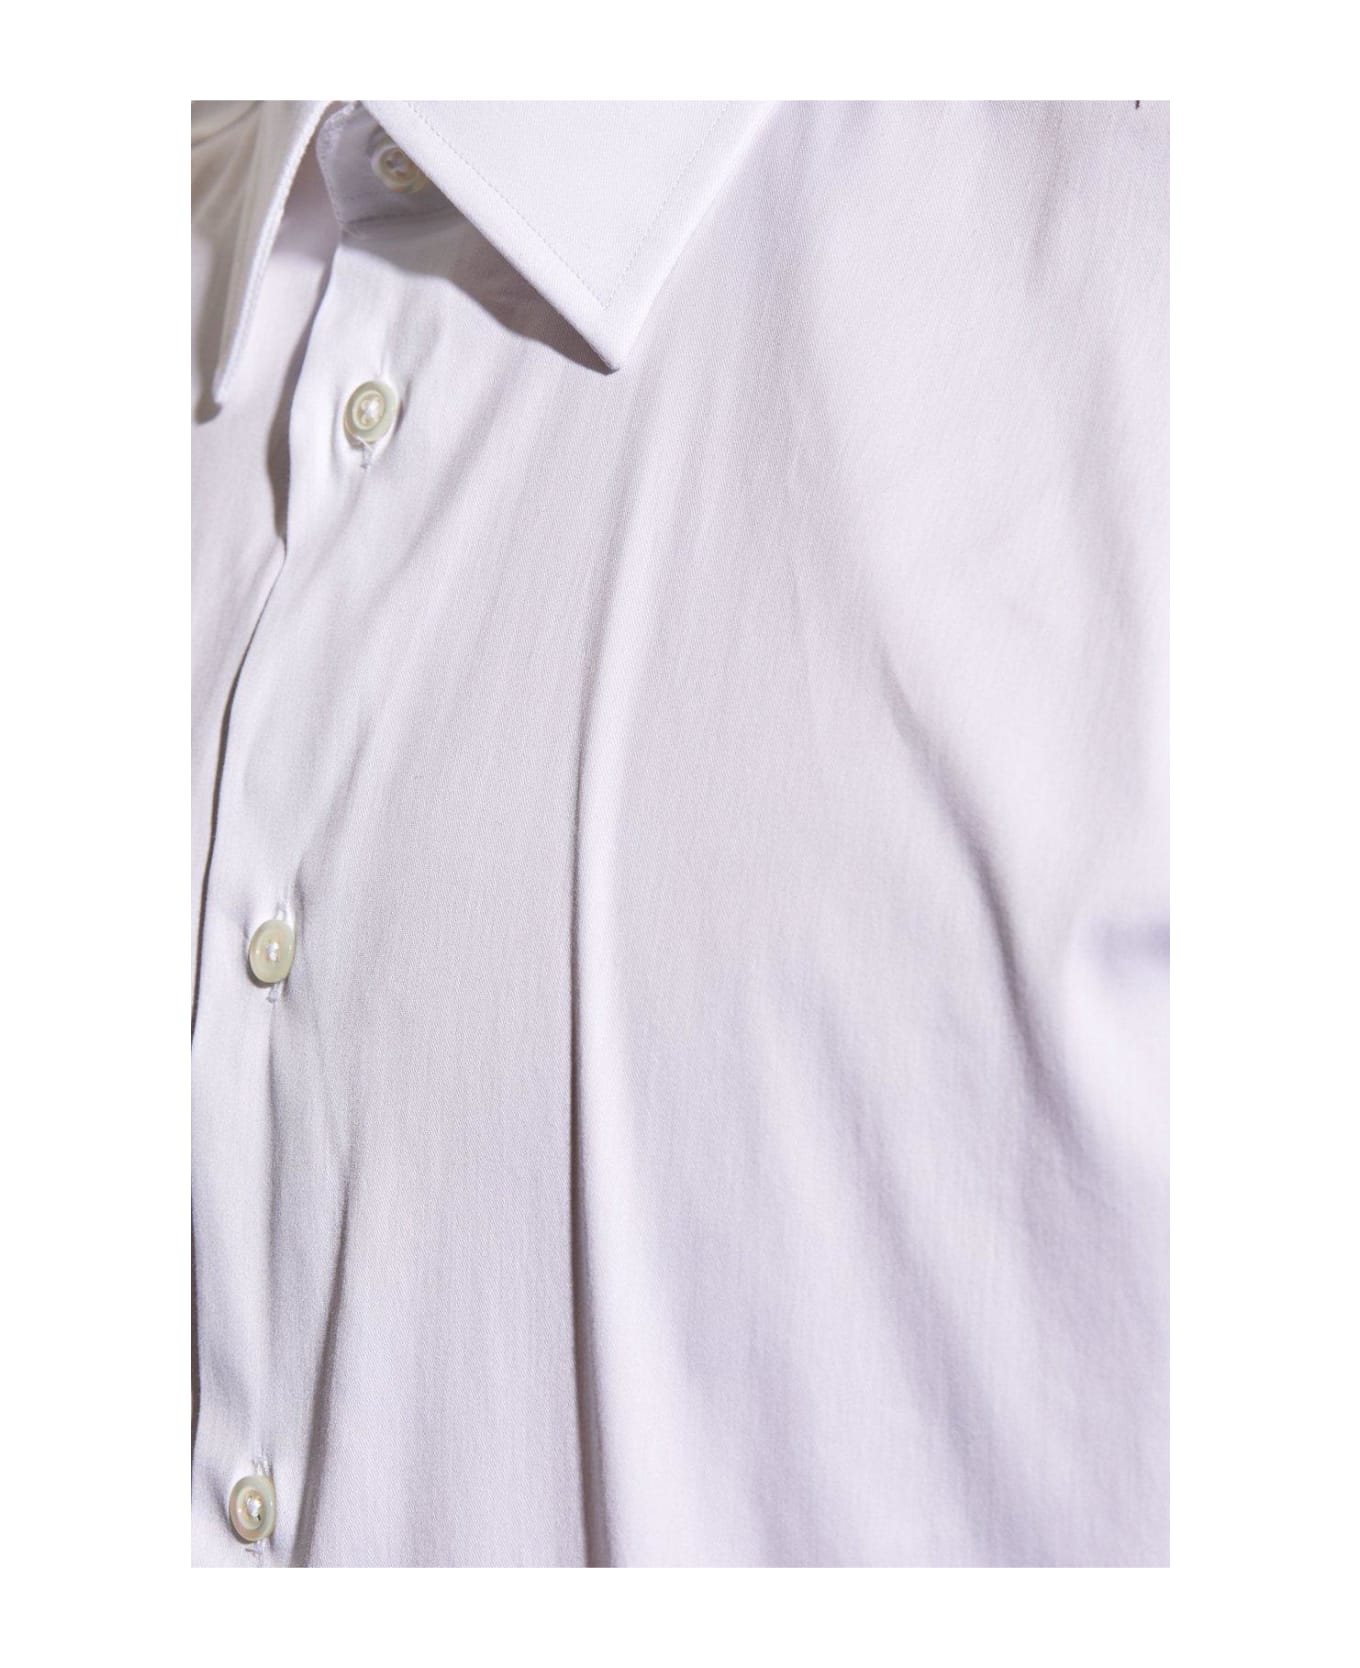 Emporio Armani Cotton Shirt - Bianco